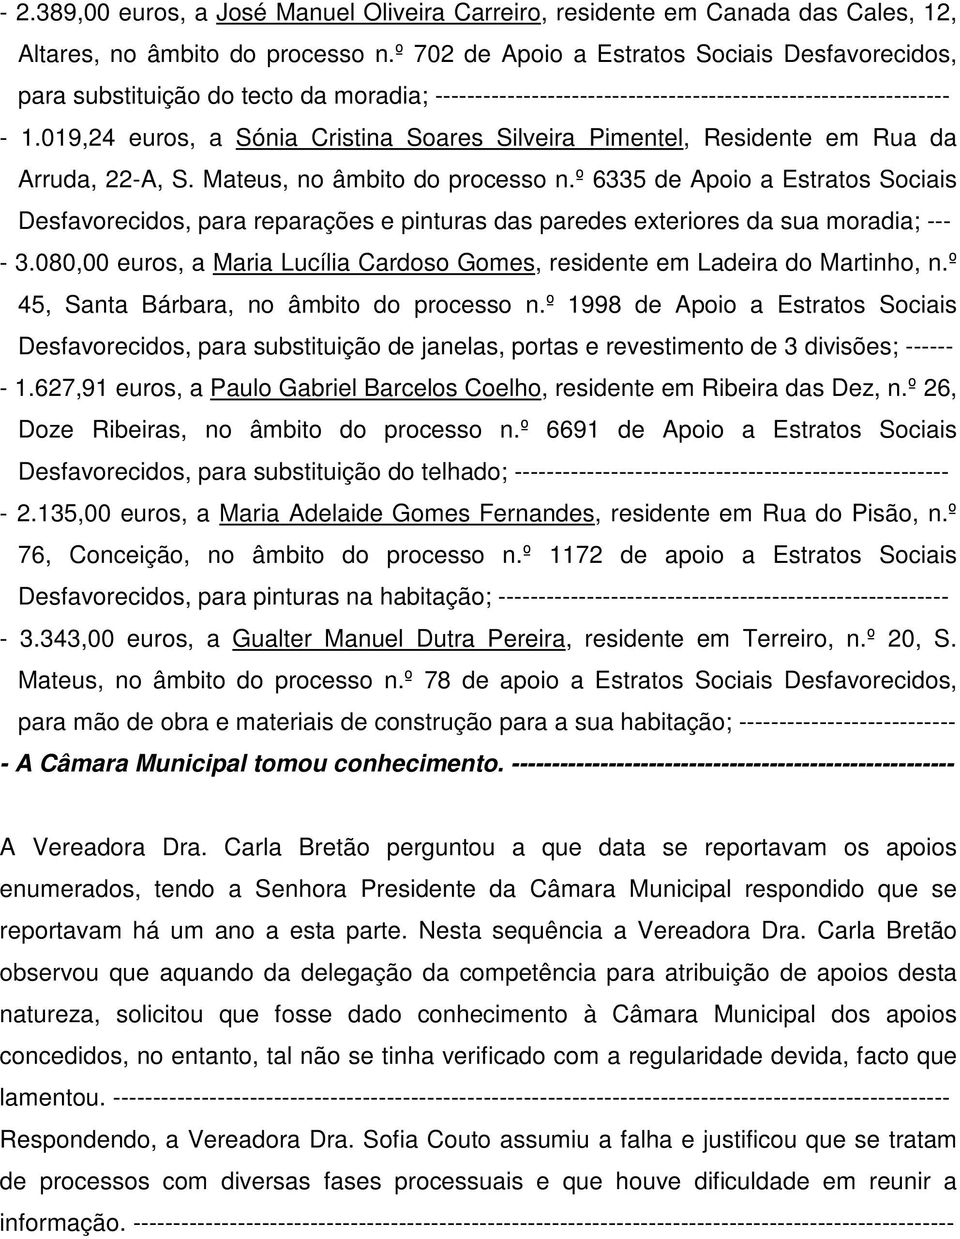 019,24 euros, a Sónia Cristina Soares Silveira Pimentel, Residente em Rua da Arruda, 22-A, S. Mateus, no âmbito do processo n.